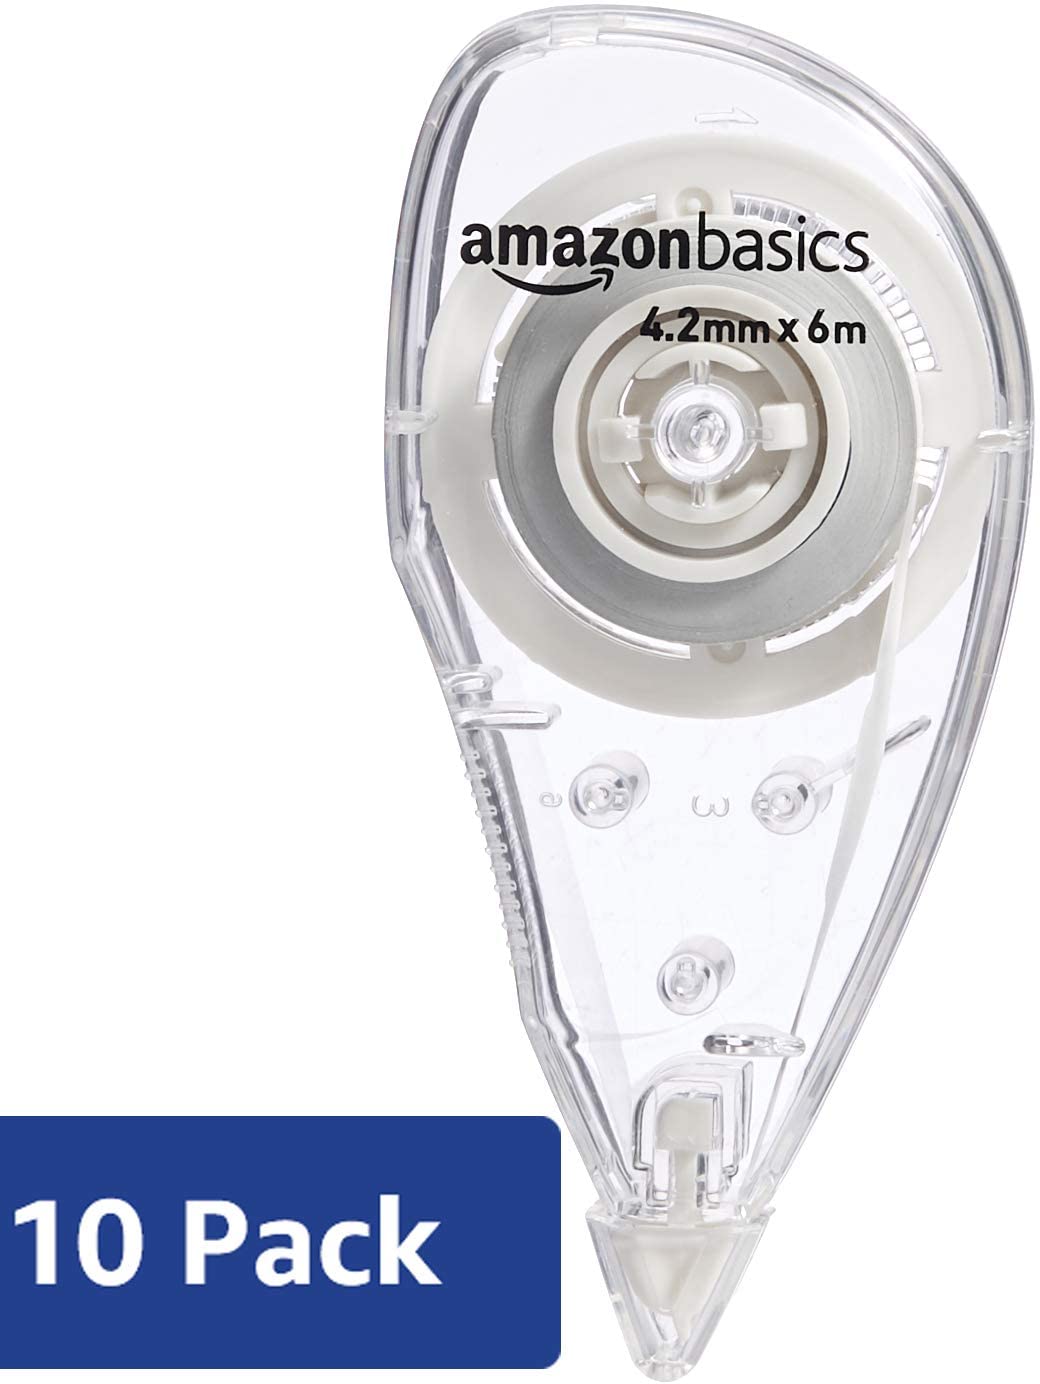 Amazon Basics - Correttore a nastro, 4,2 mm x 6 m, confezione da 10